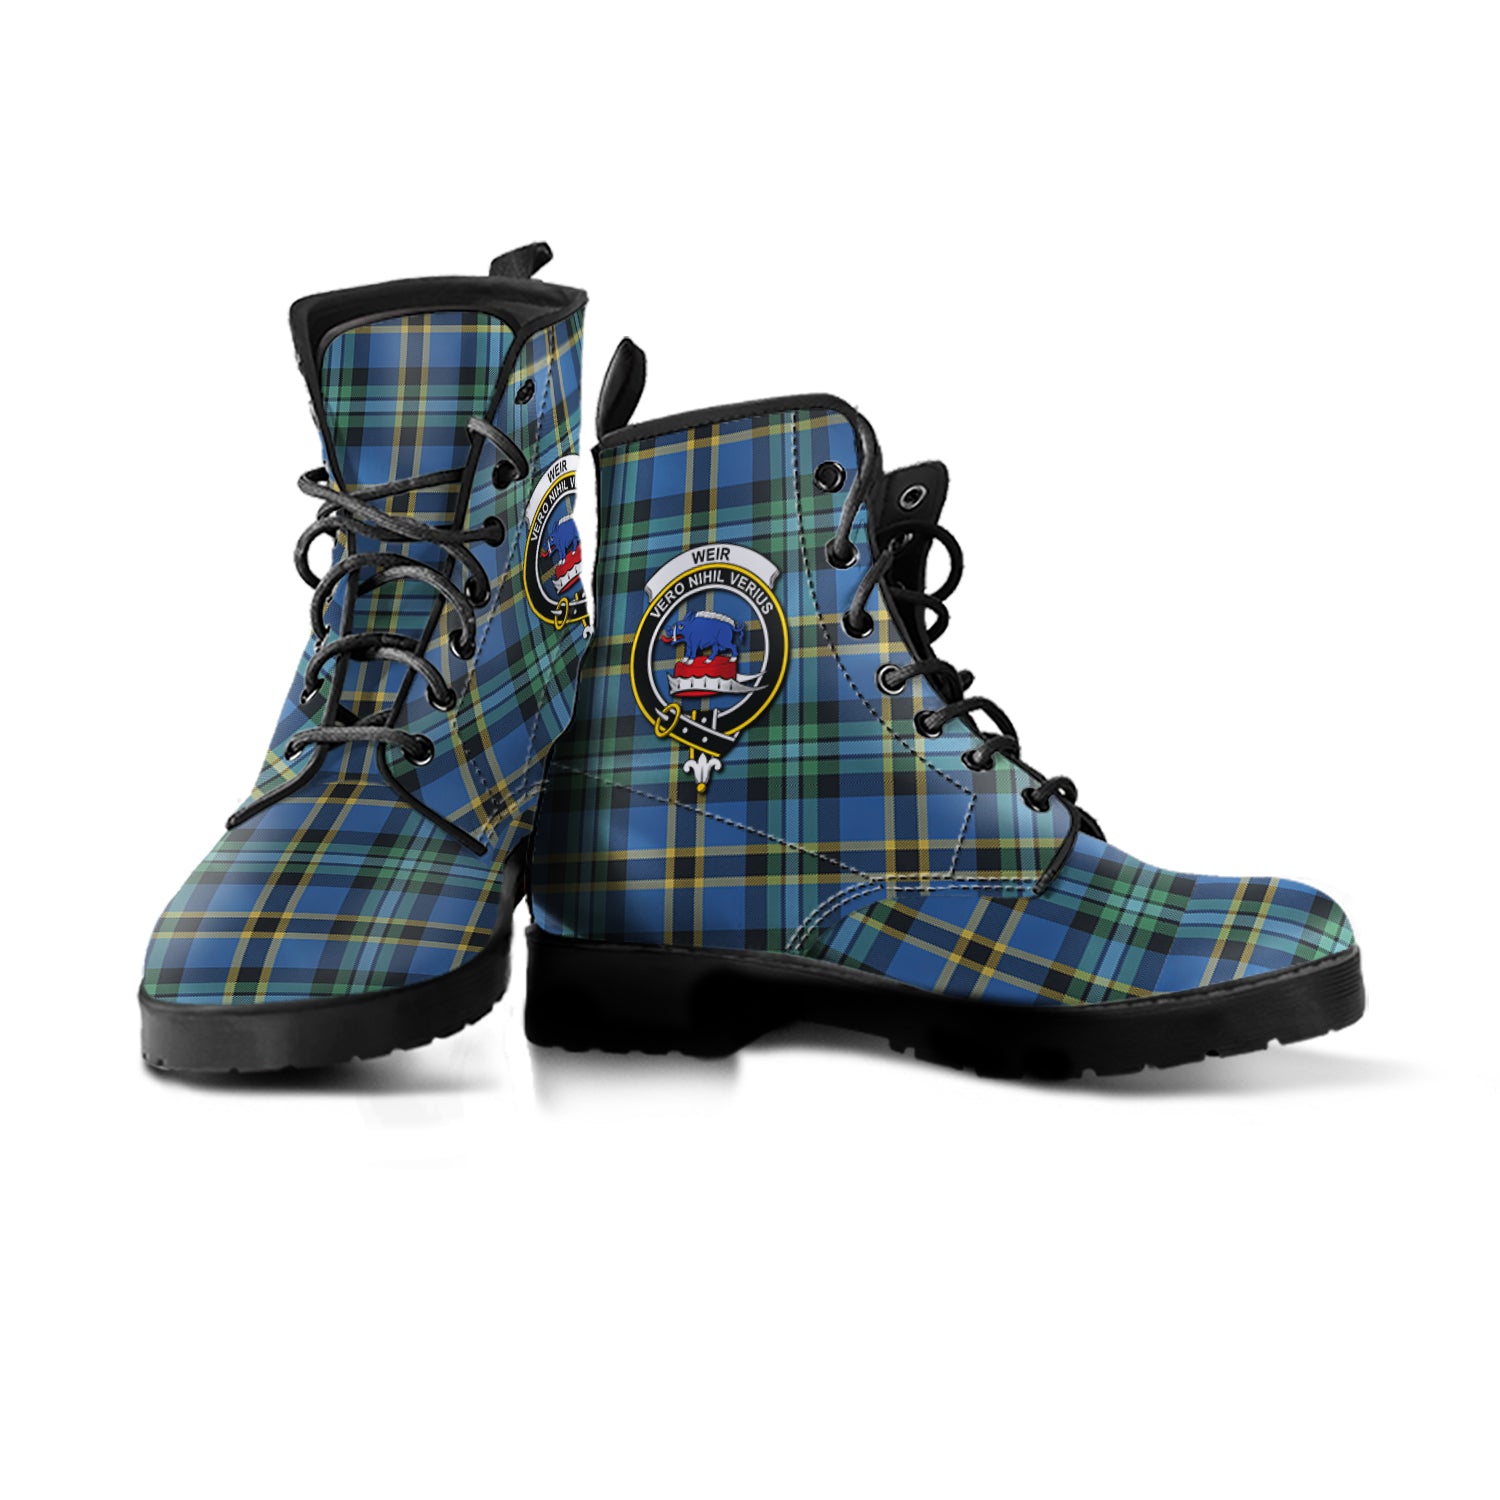 scottish-weir-ancient-clan-crest-tartan-leather-boots